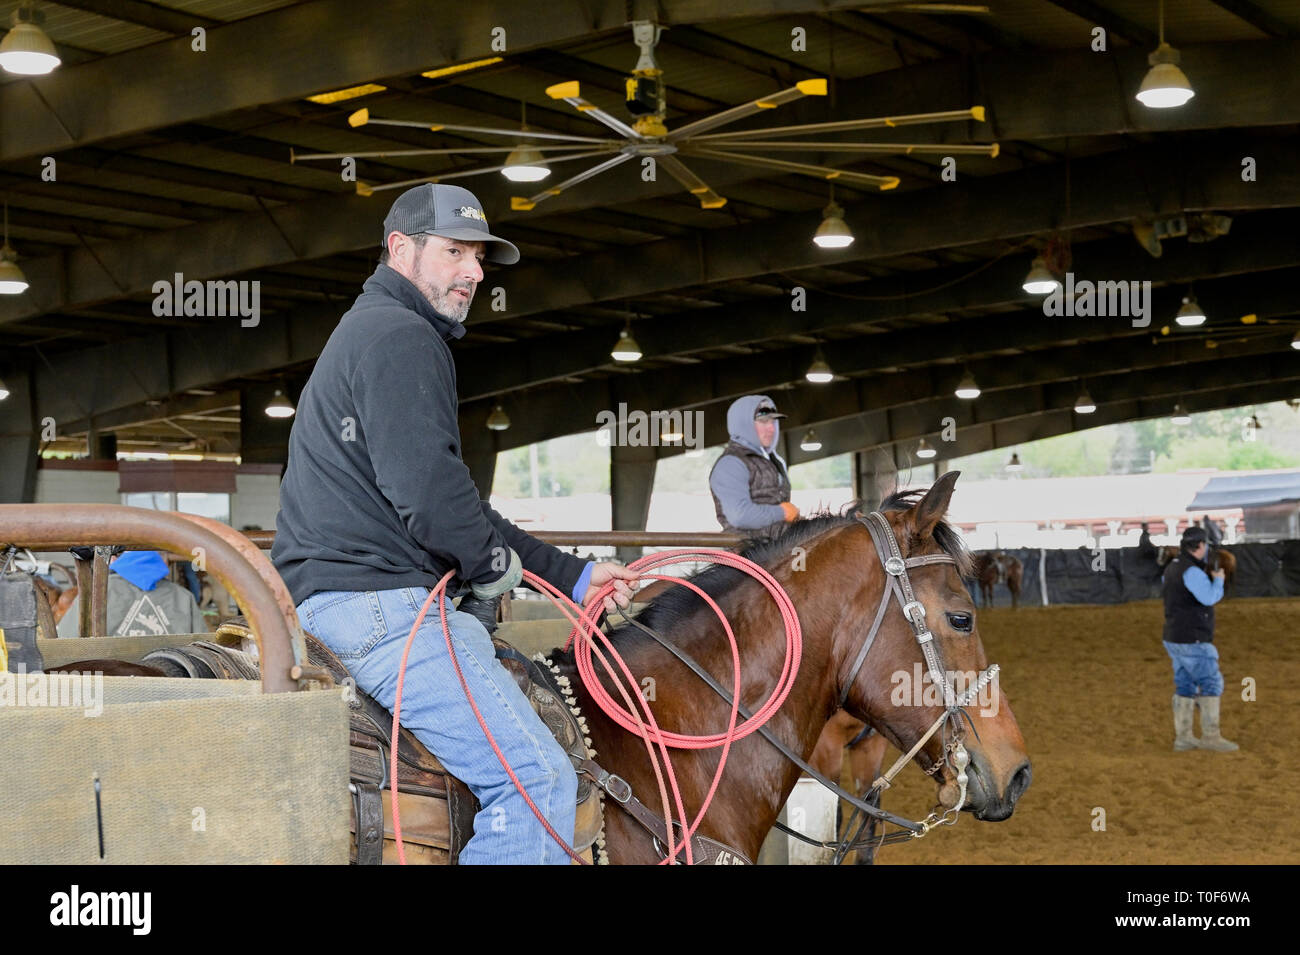 Cowboy americano su una baia sellati cavallo in attesa di un team roping evento o pratica prima di un rodeo a Montgomery in Alabama, Stati Uniti d'America. Foto Stock